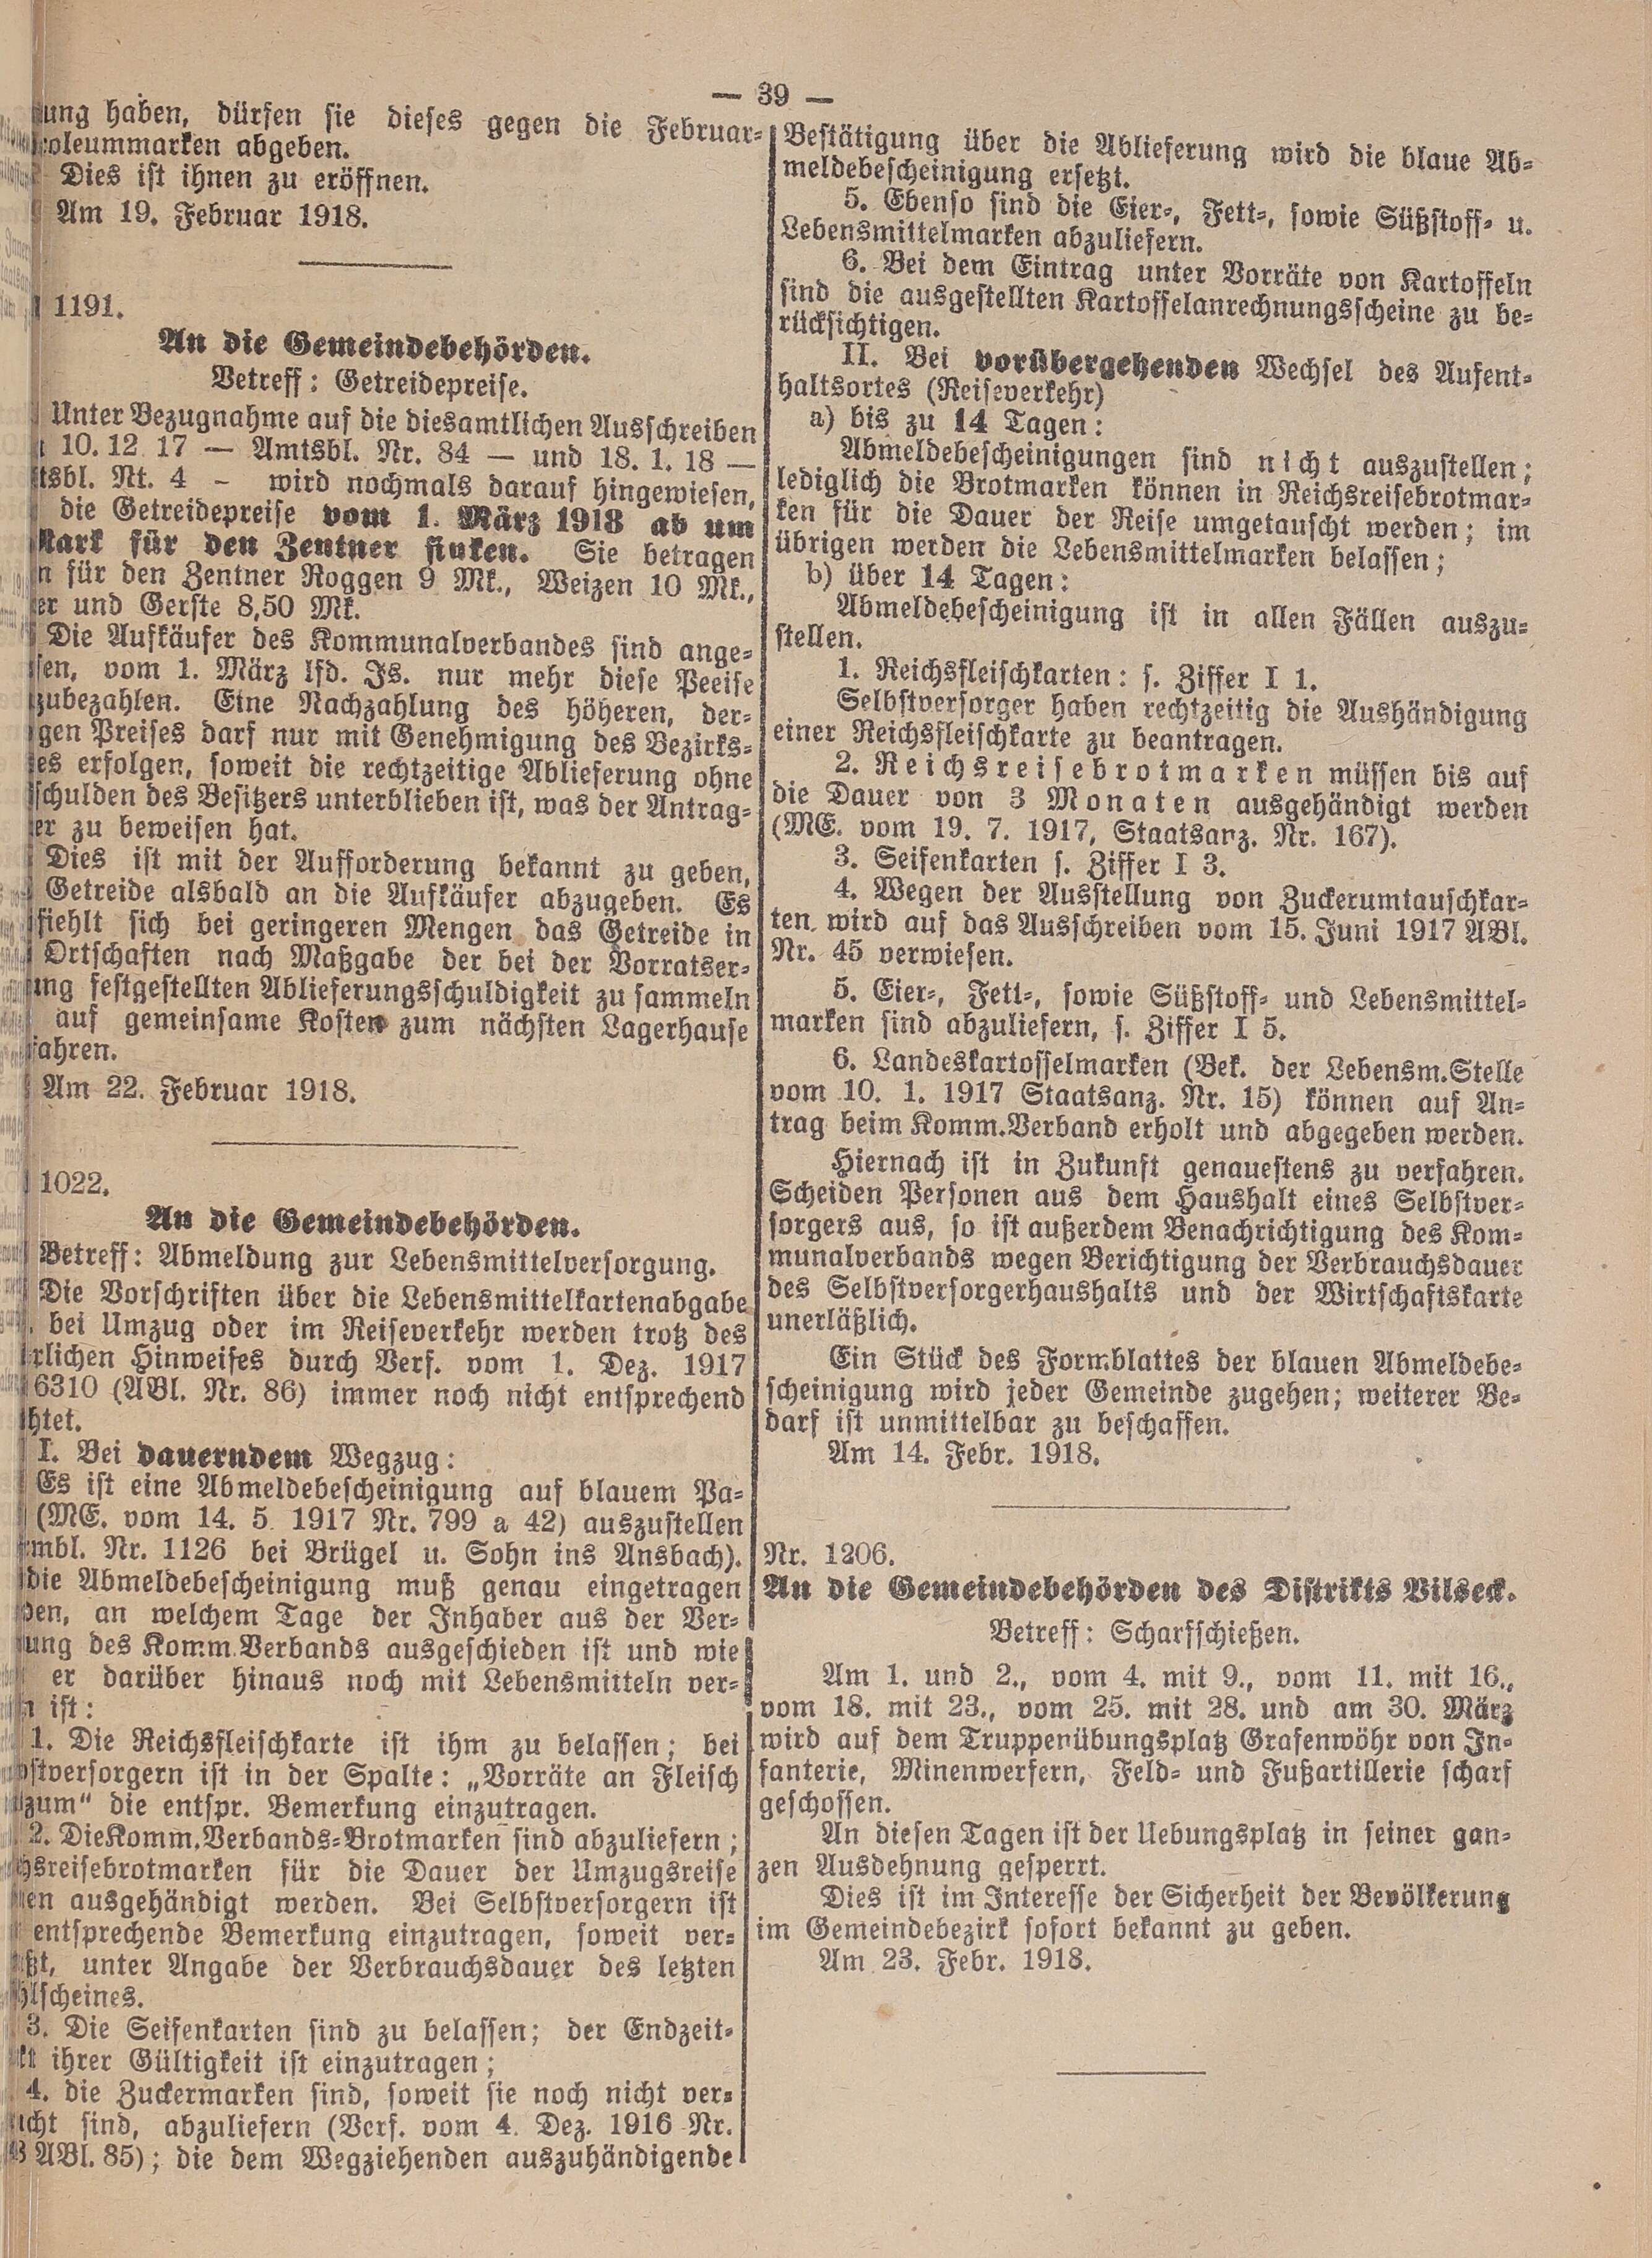 3. amtsblatt-amberg-1918-02-27-n10_3680